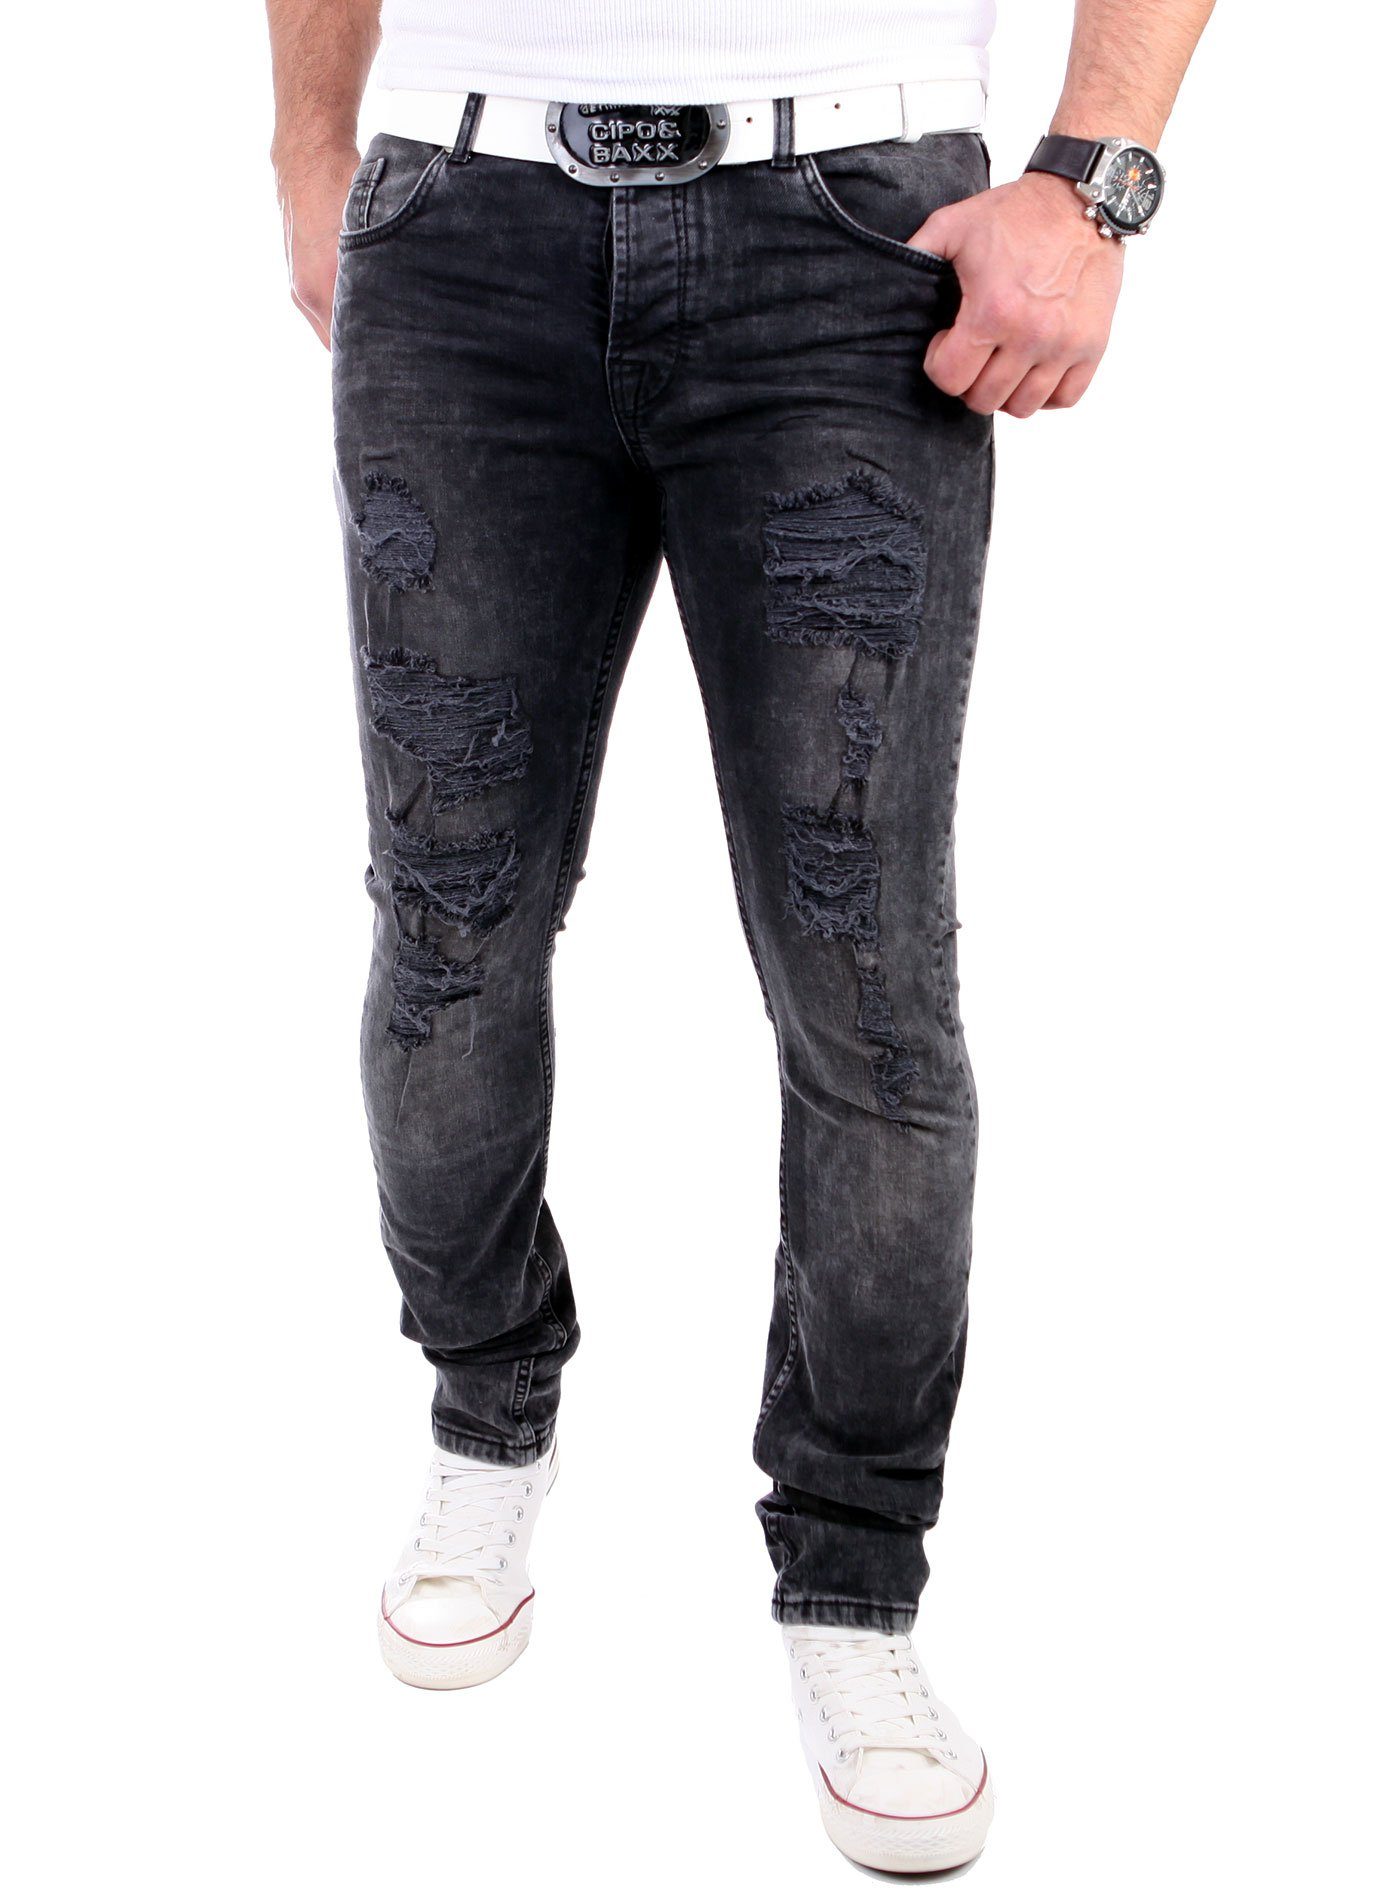 Slim Jeans Männer-Hose Destroyed-Jeans Destroyed Look VSCT Destroyed Fit VSCT Heavy Keno Jeans Herren Rock